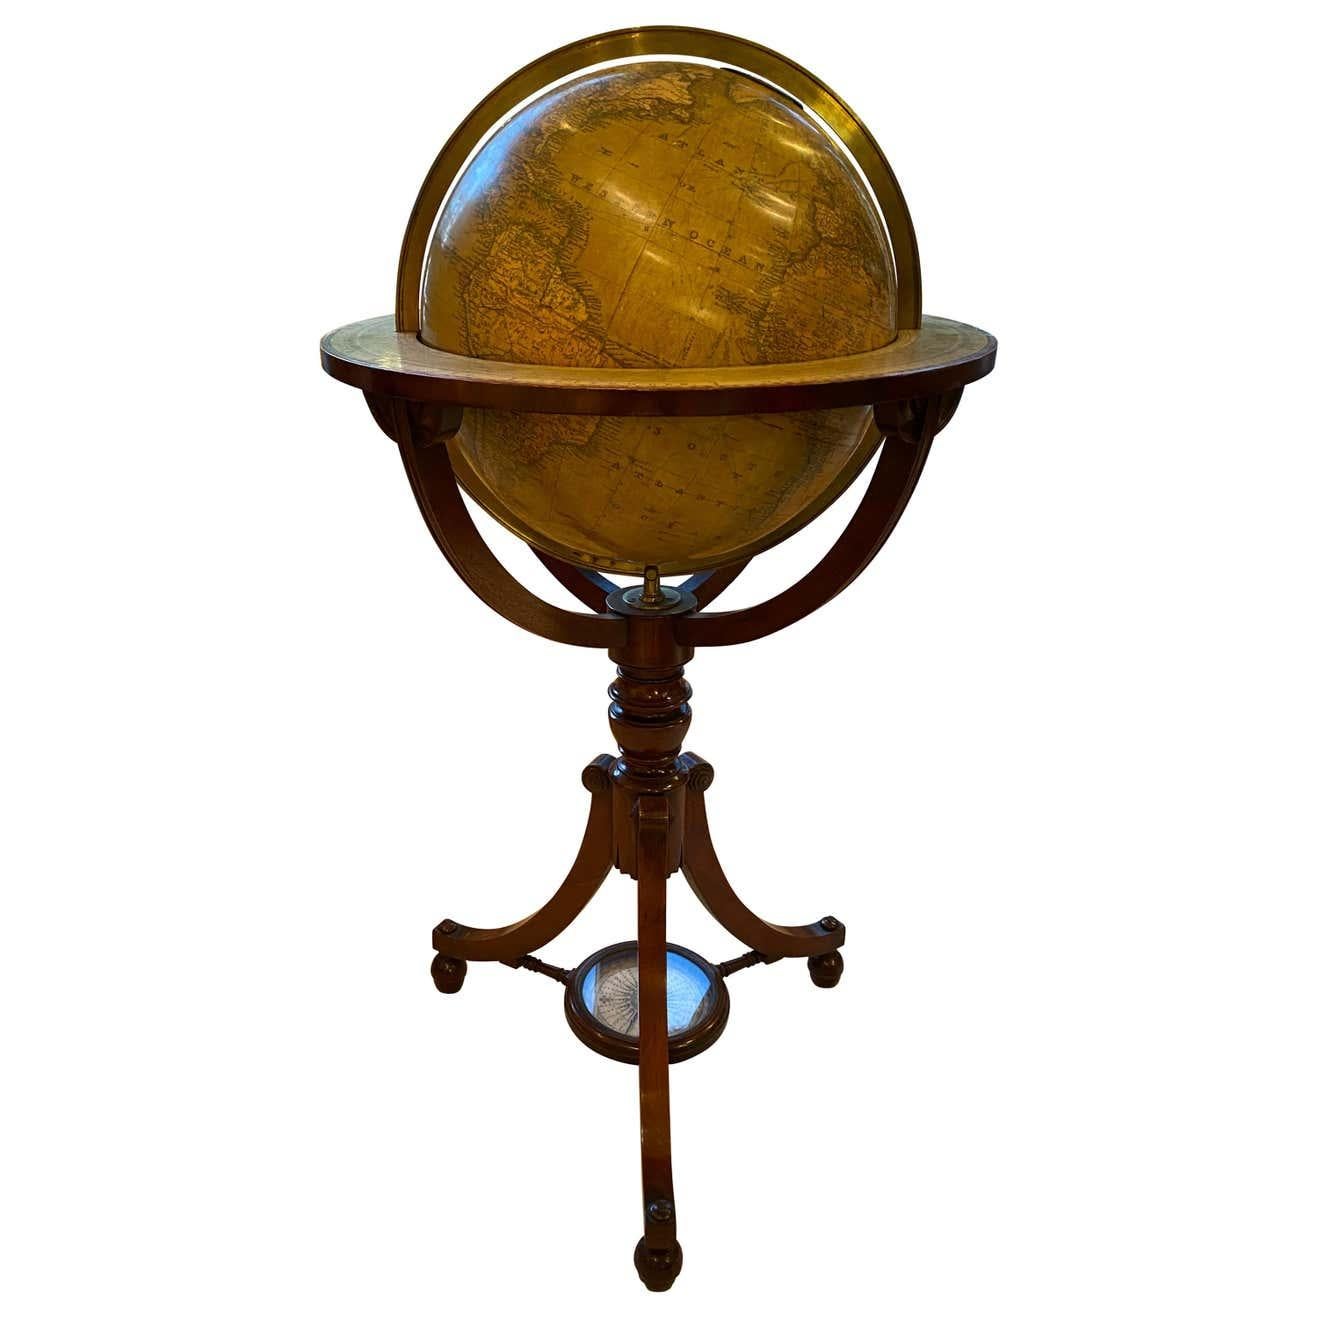 Un globe anglais extrêmement rare et important de 21 pouces réalisé par les cartographes renommés John Newton and Son, l'un des plus importants fabricants de globes du début du 19e siècle en Angleterre. Représentant les paysages terrestres, cette